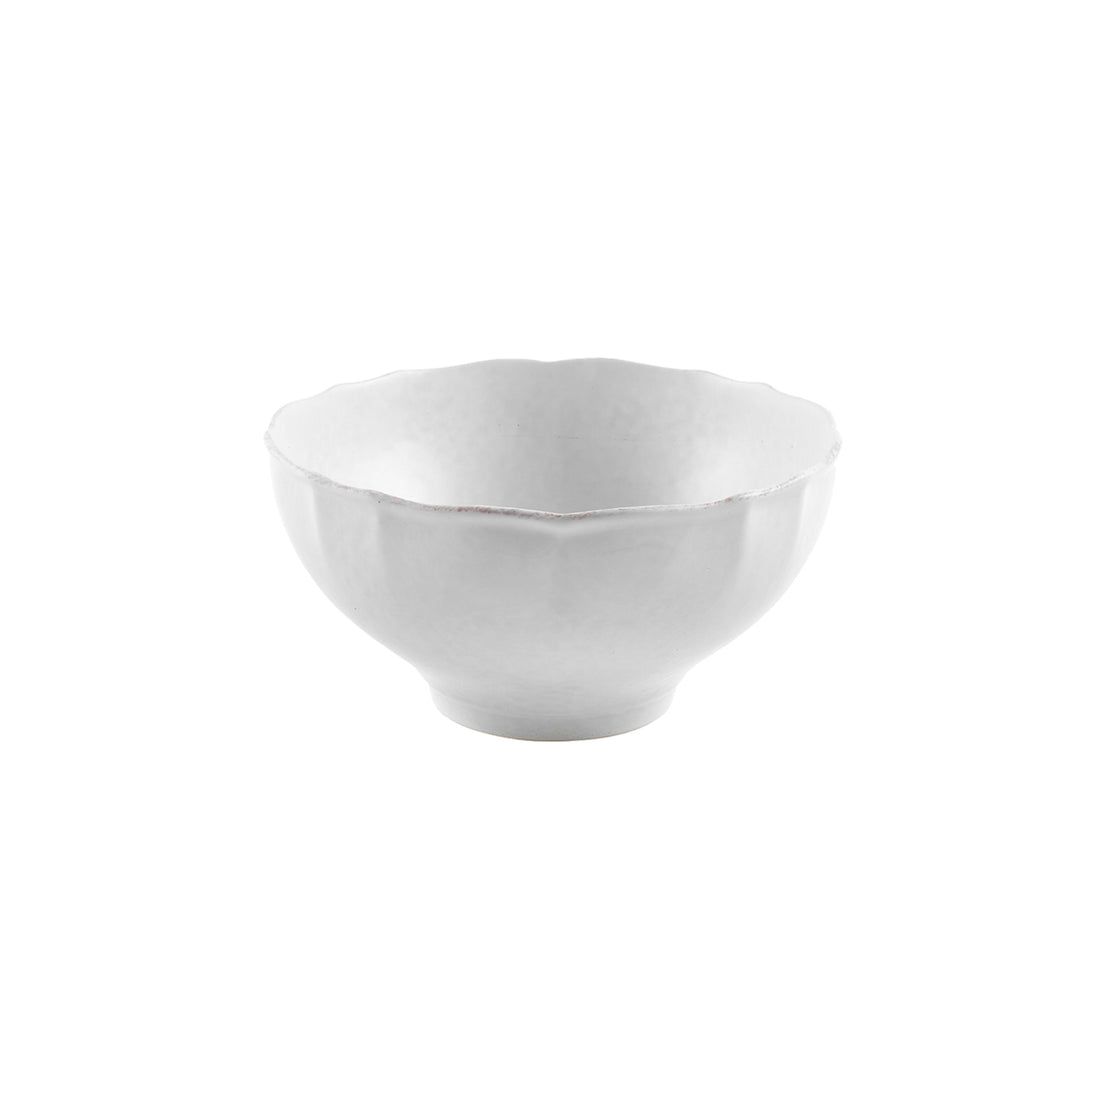 Casafina Impressions Large Serving Bowl